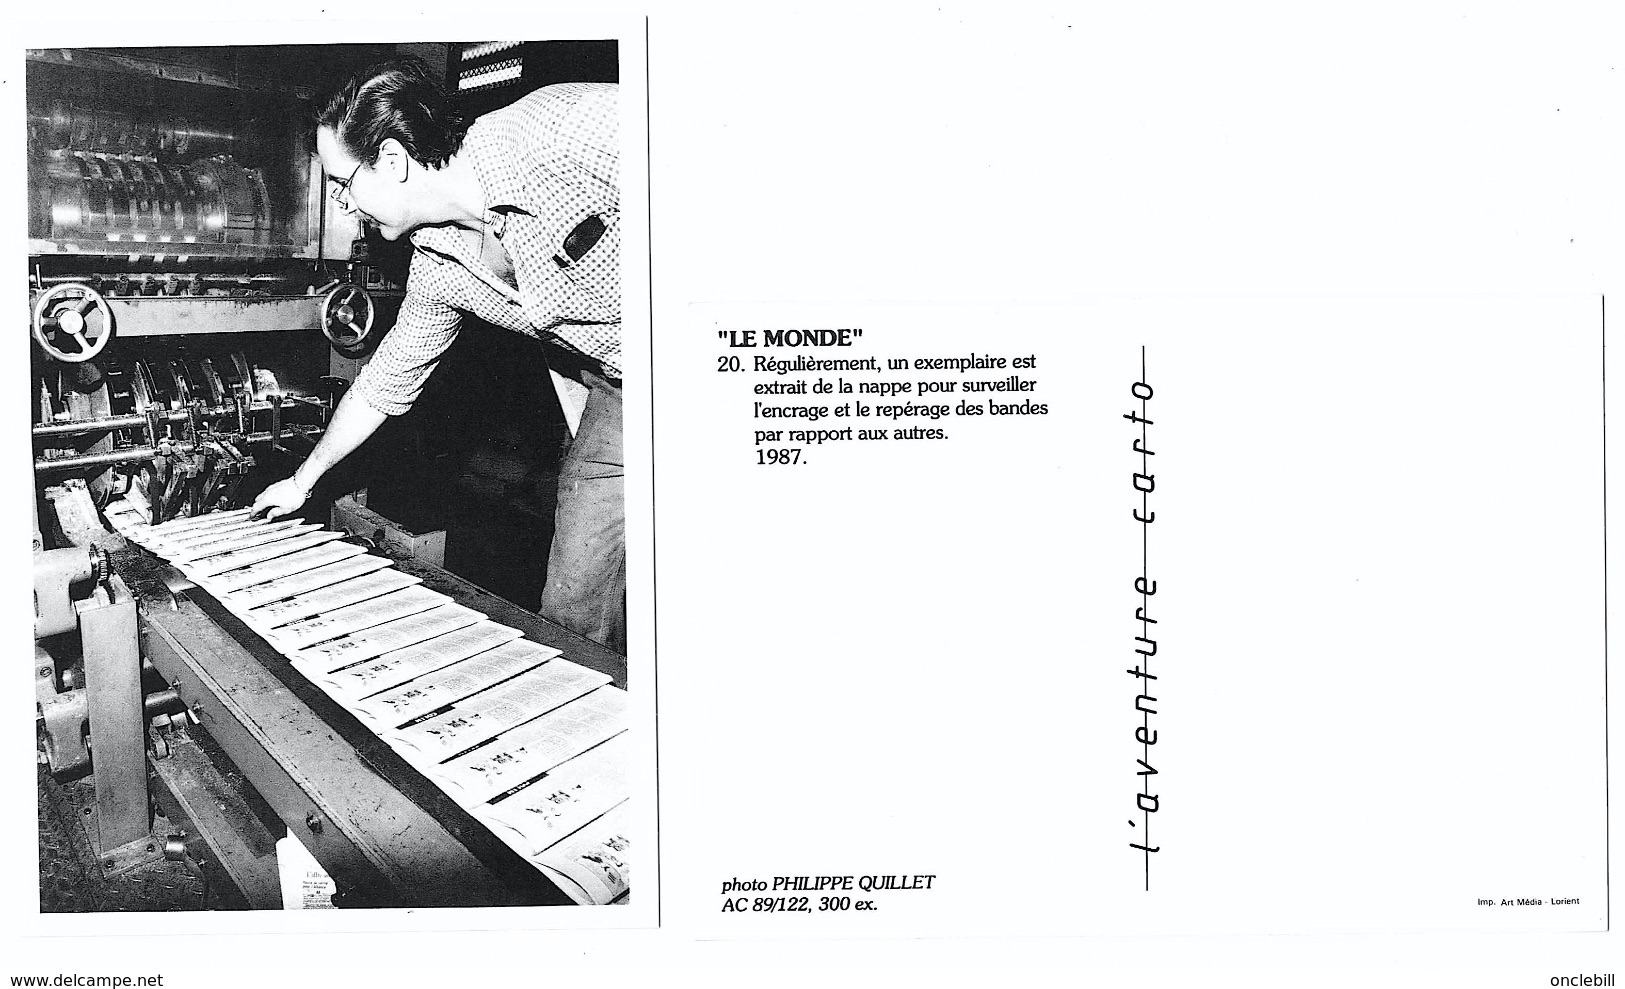 lot 22 cartes fabrication journal le monde aventure carto 1989 ph. quillet tir.limité état superbe